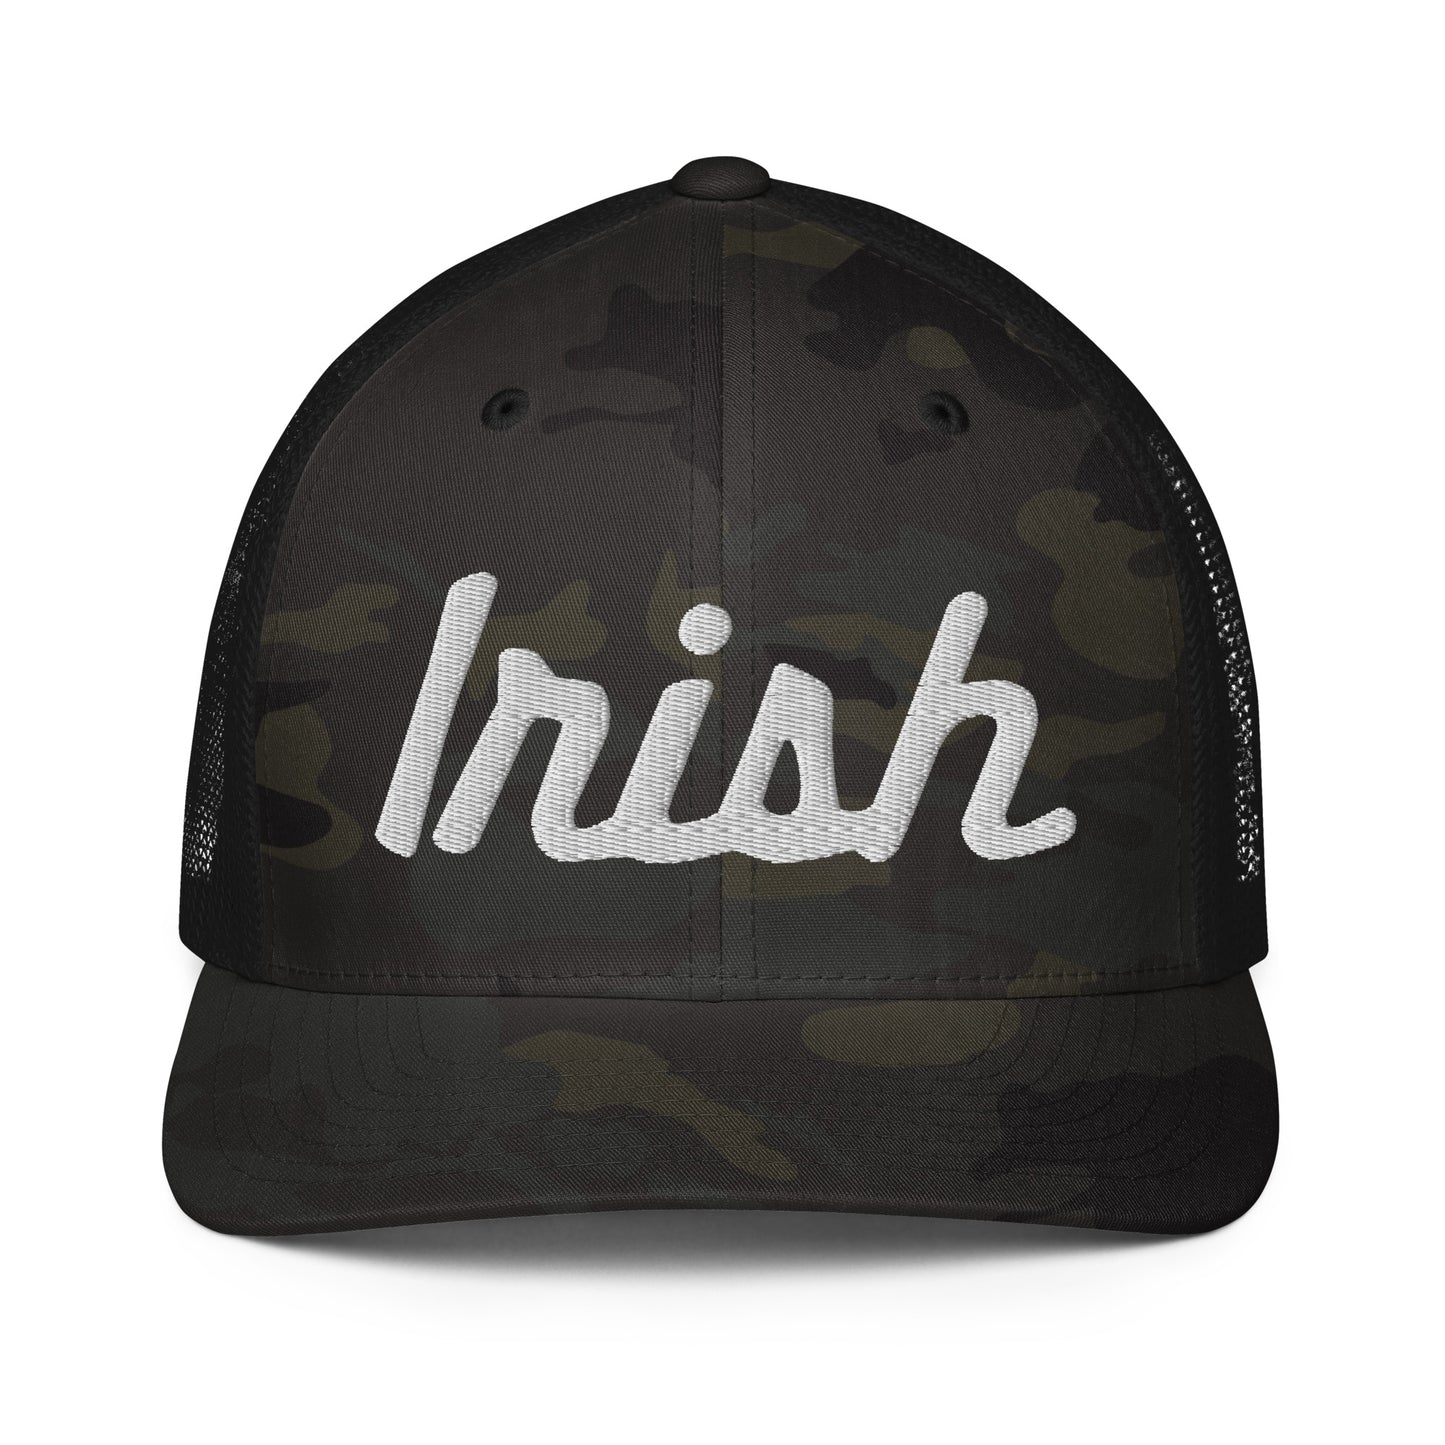 IRISH_CAMO embroidered-Closed-back trucker cap